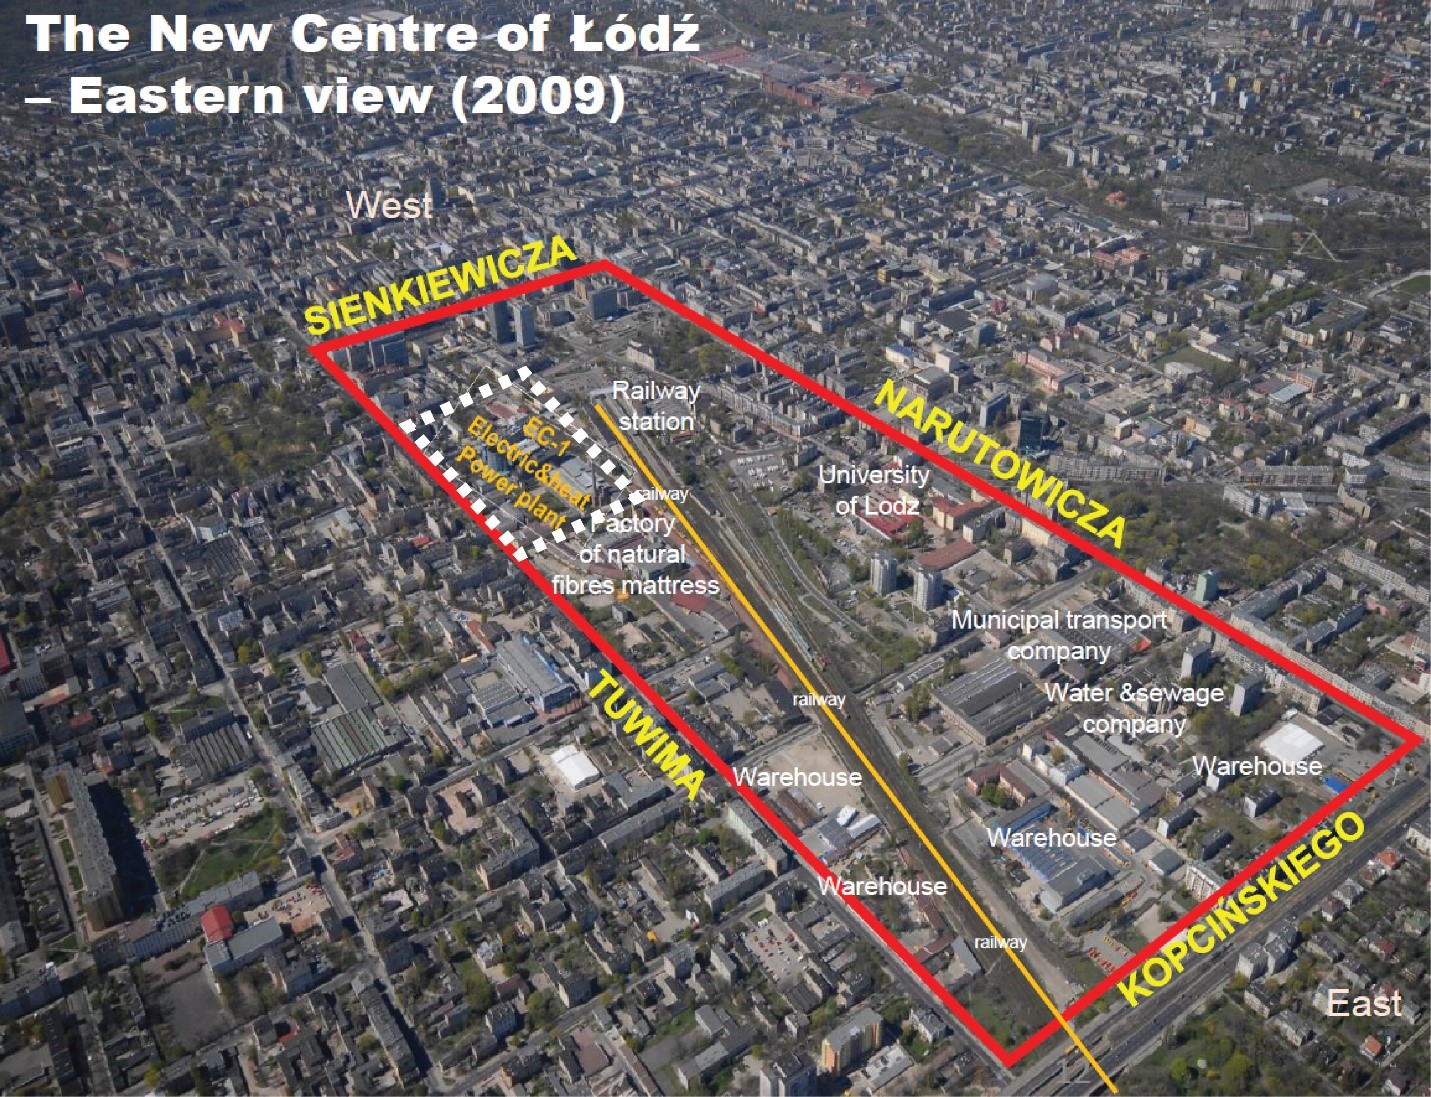 Изглед към зоната за нов градски център на Лодз, включително EC1